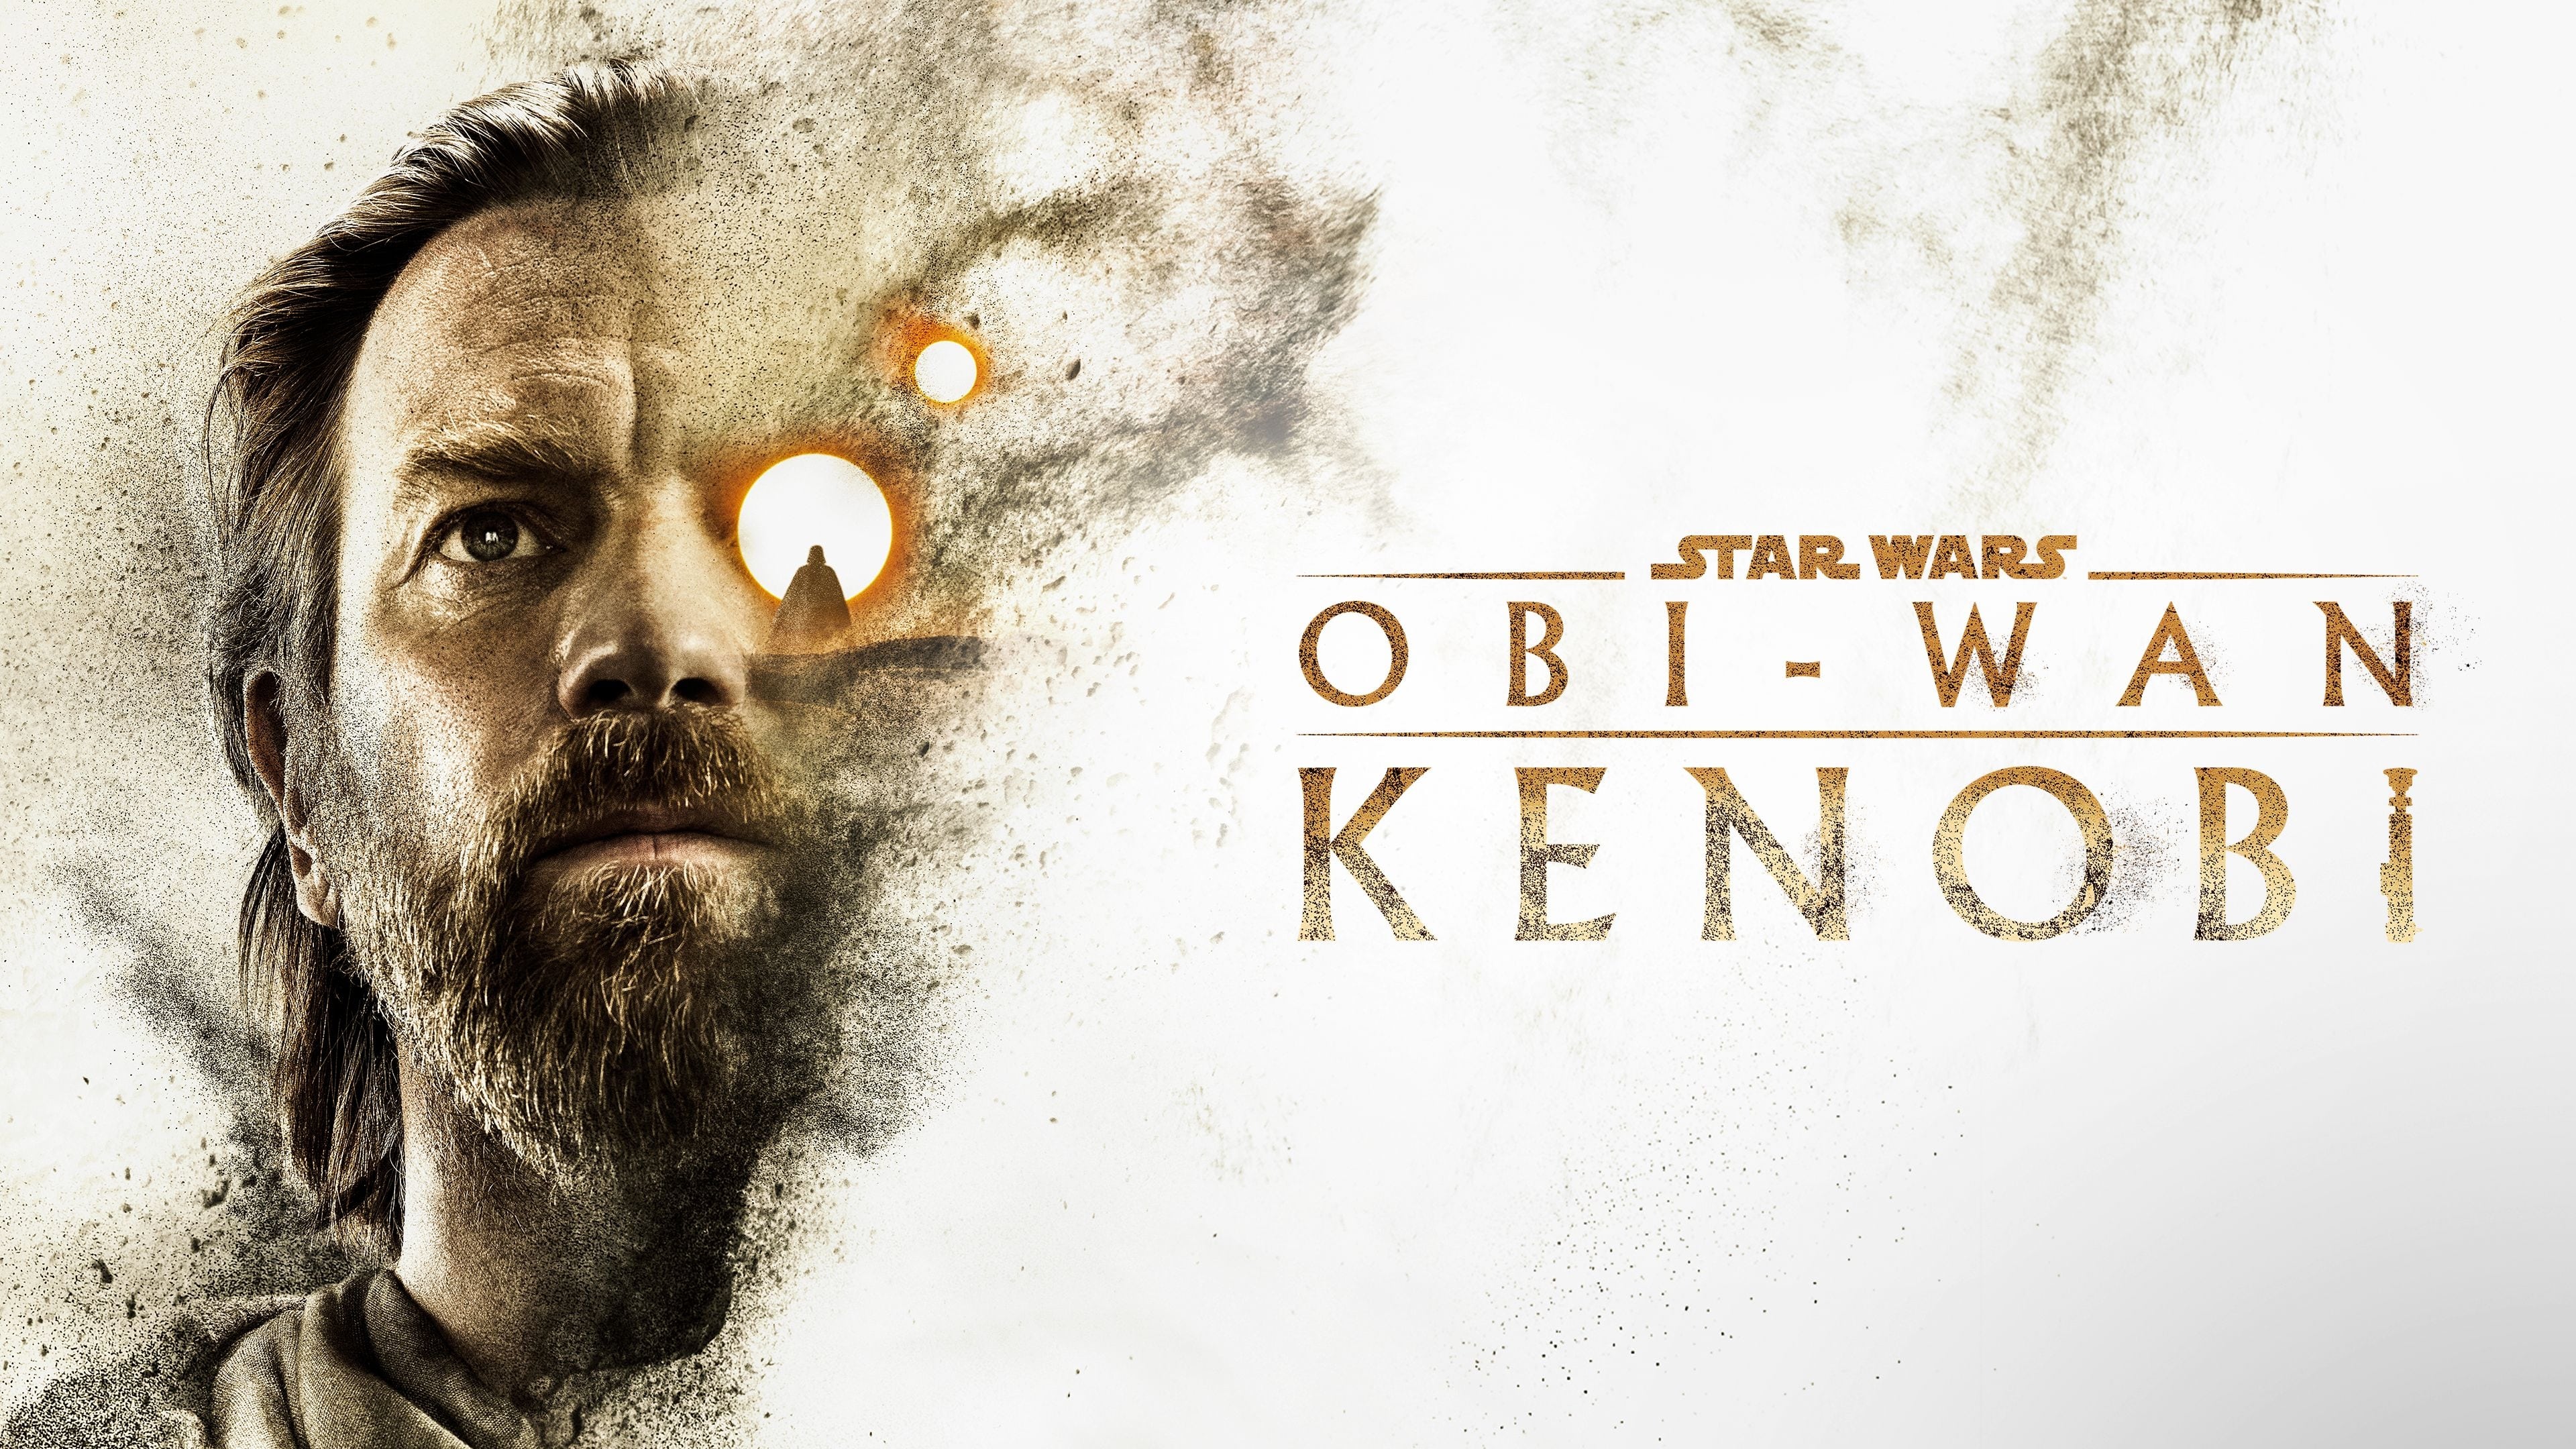 Obi-Wan Kenobi - Season 1 Episode 1